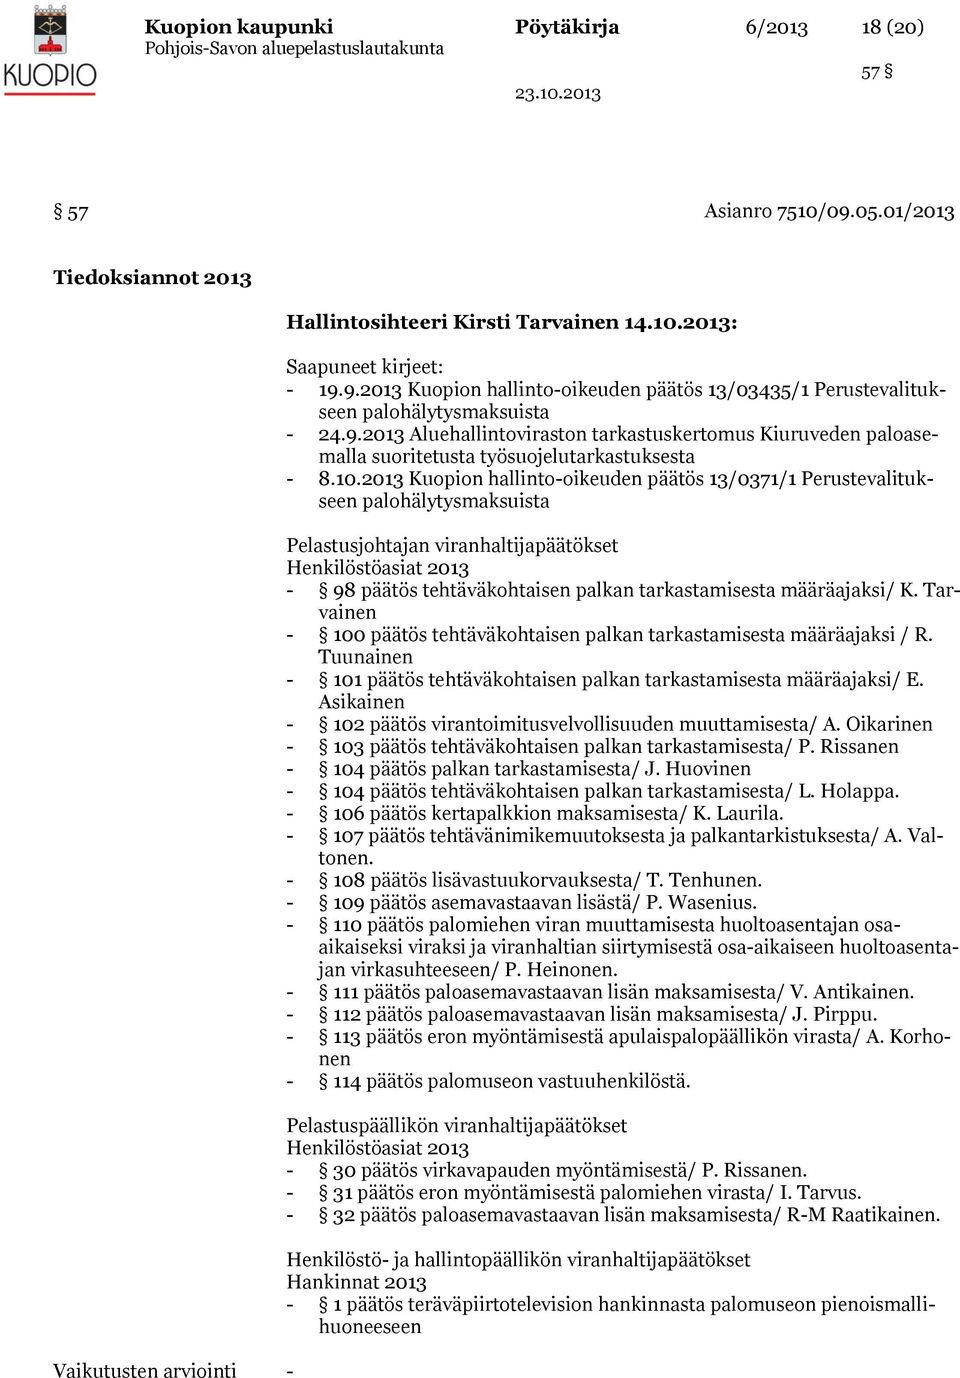 2013 Kuopion hallinto-oikeuden päätös 13/0371/1 Perustevalitukseen palohälytysmaksuista Pelastusjohtajan viranhaltijapäätökset Henkilöstöasiat 2013-98 päätös tehtäväkohtaisen palkan tarkastamisesta